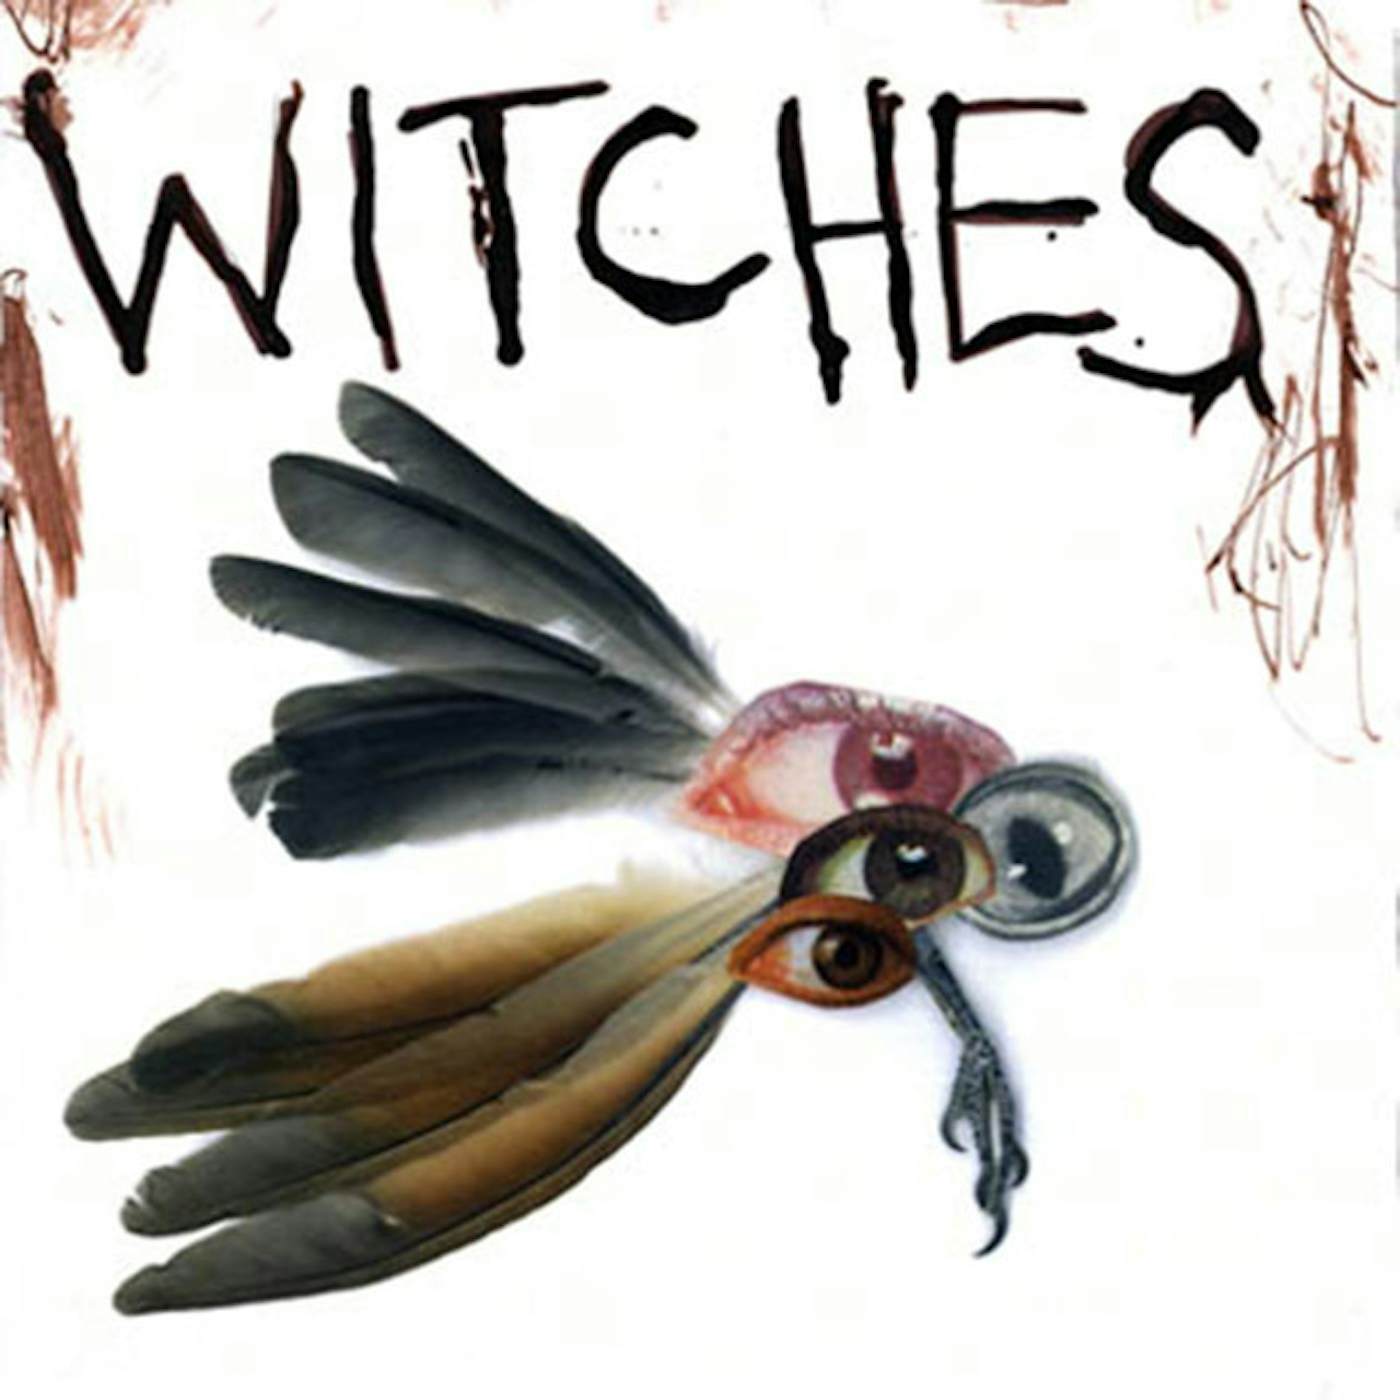 Witches   7 Vinyl Record